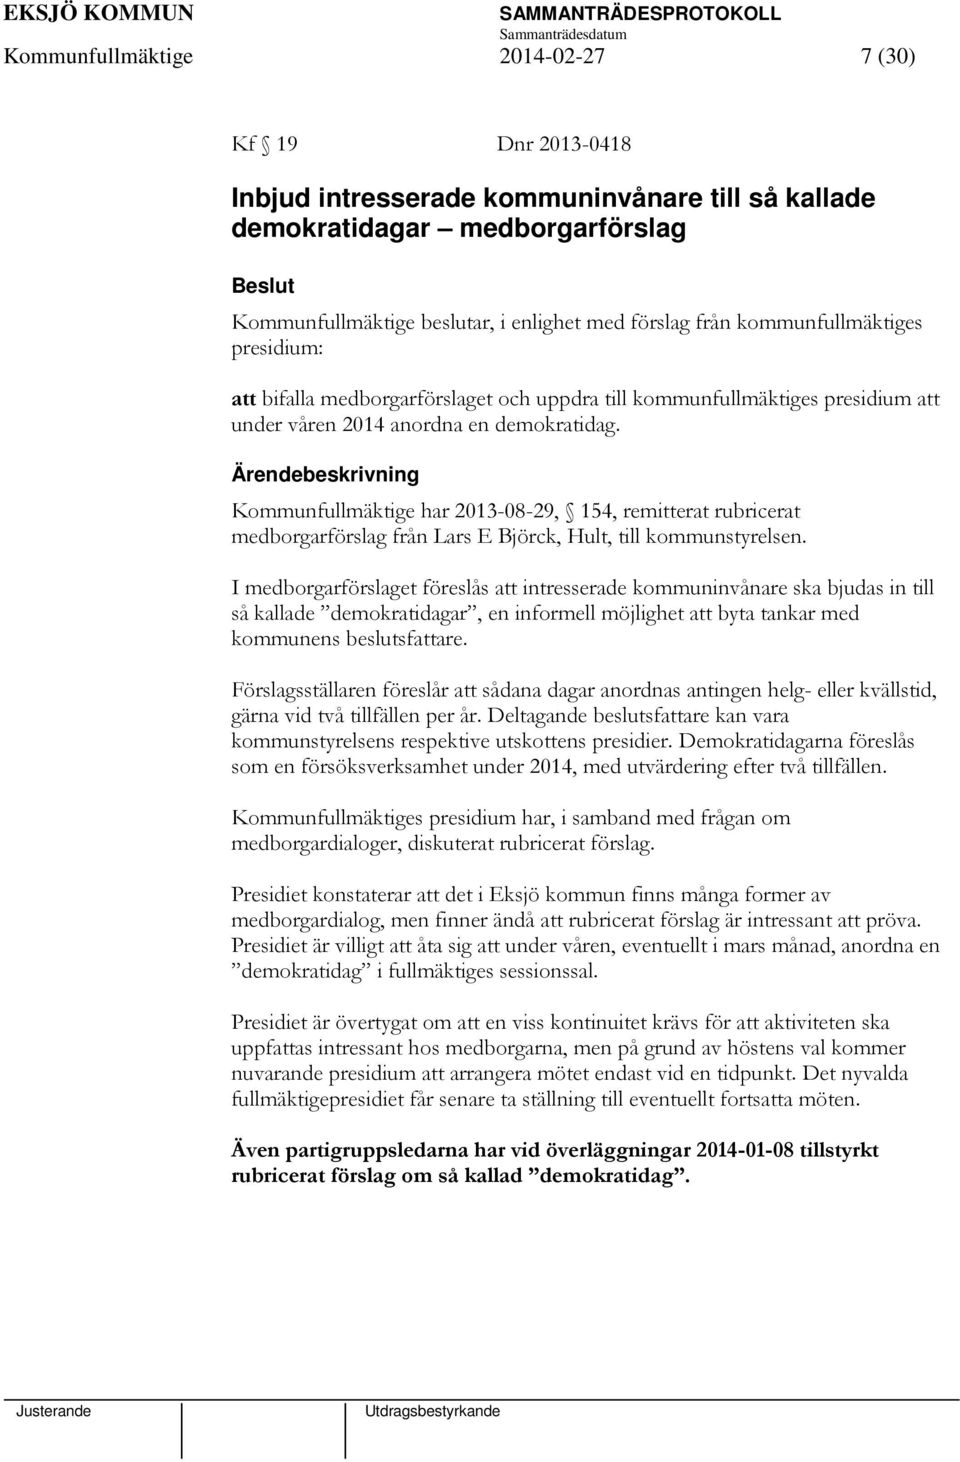 Kommunfullmäktige har 2013-08-29, 154, remitterat rubricerat medborgarförslag från Lars E Björck, Hult, till kommunstyrelsen.